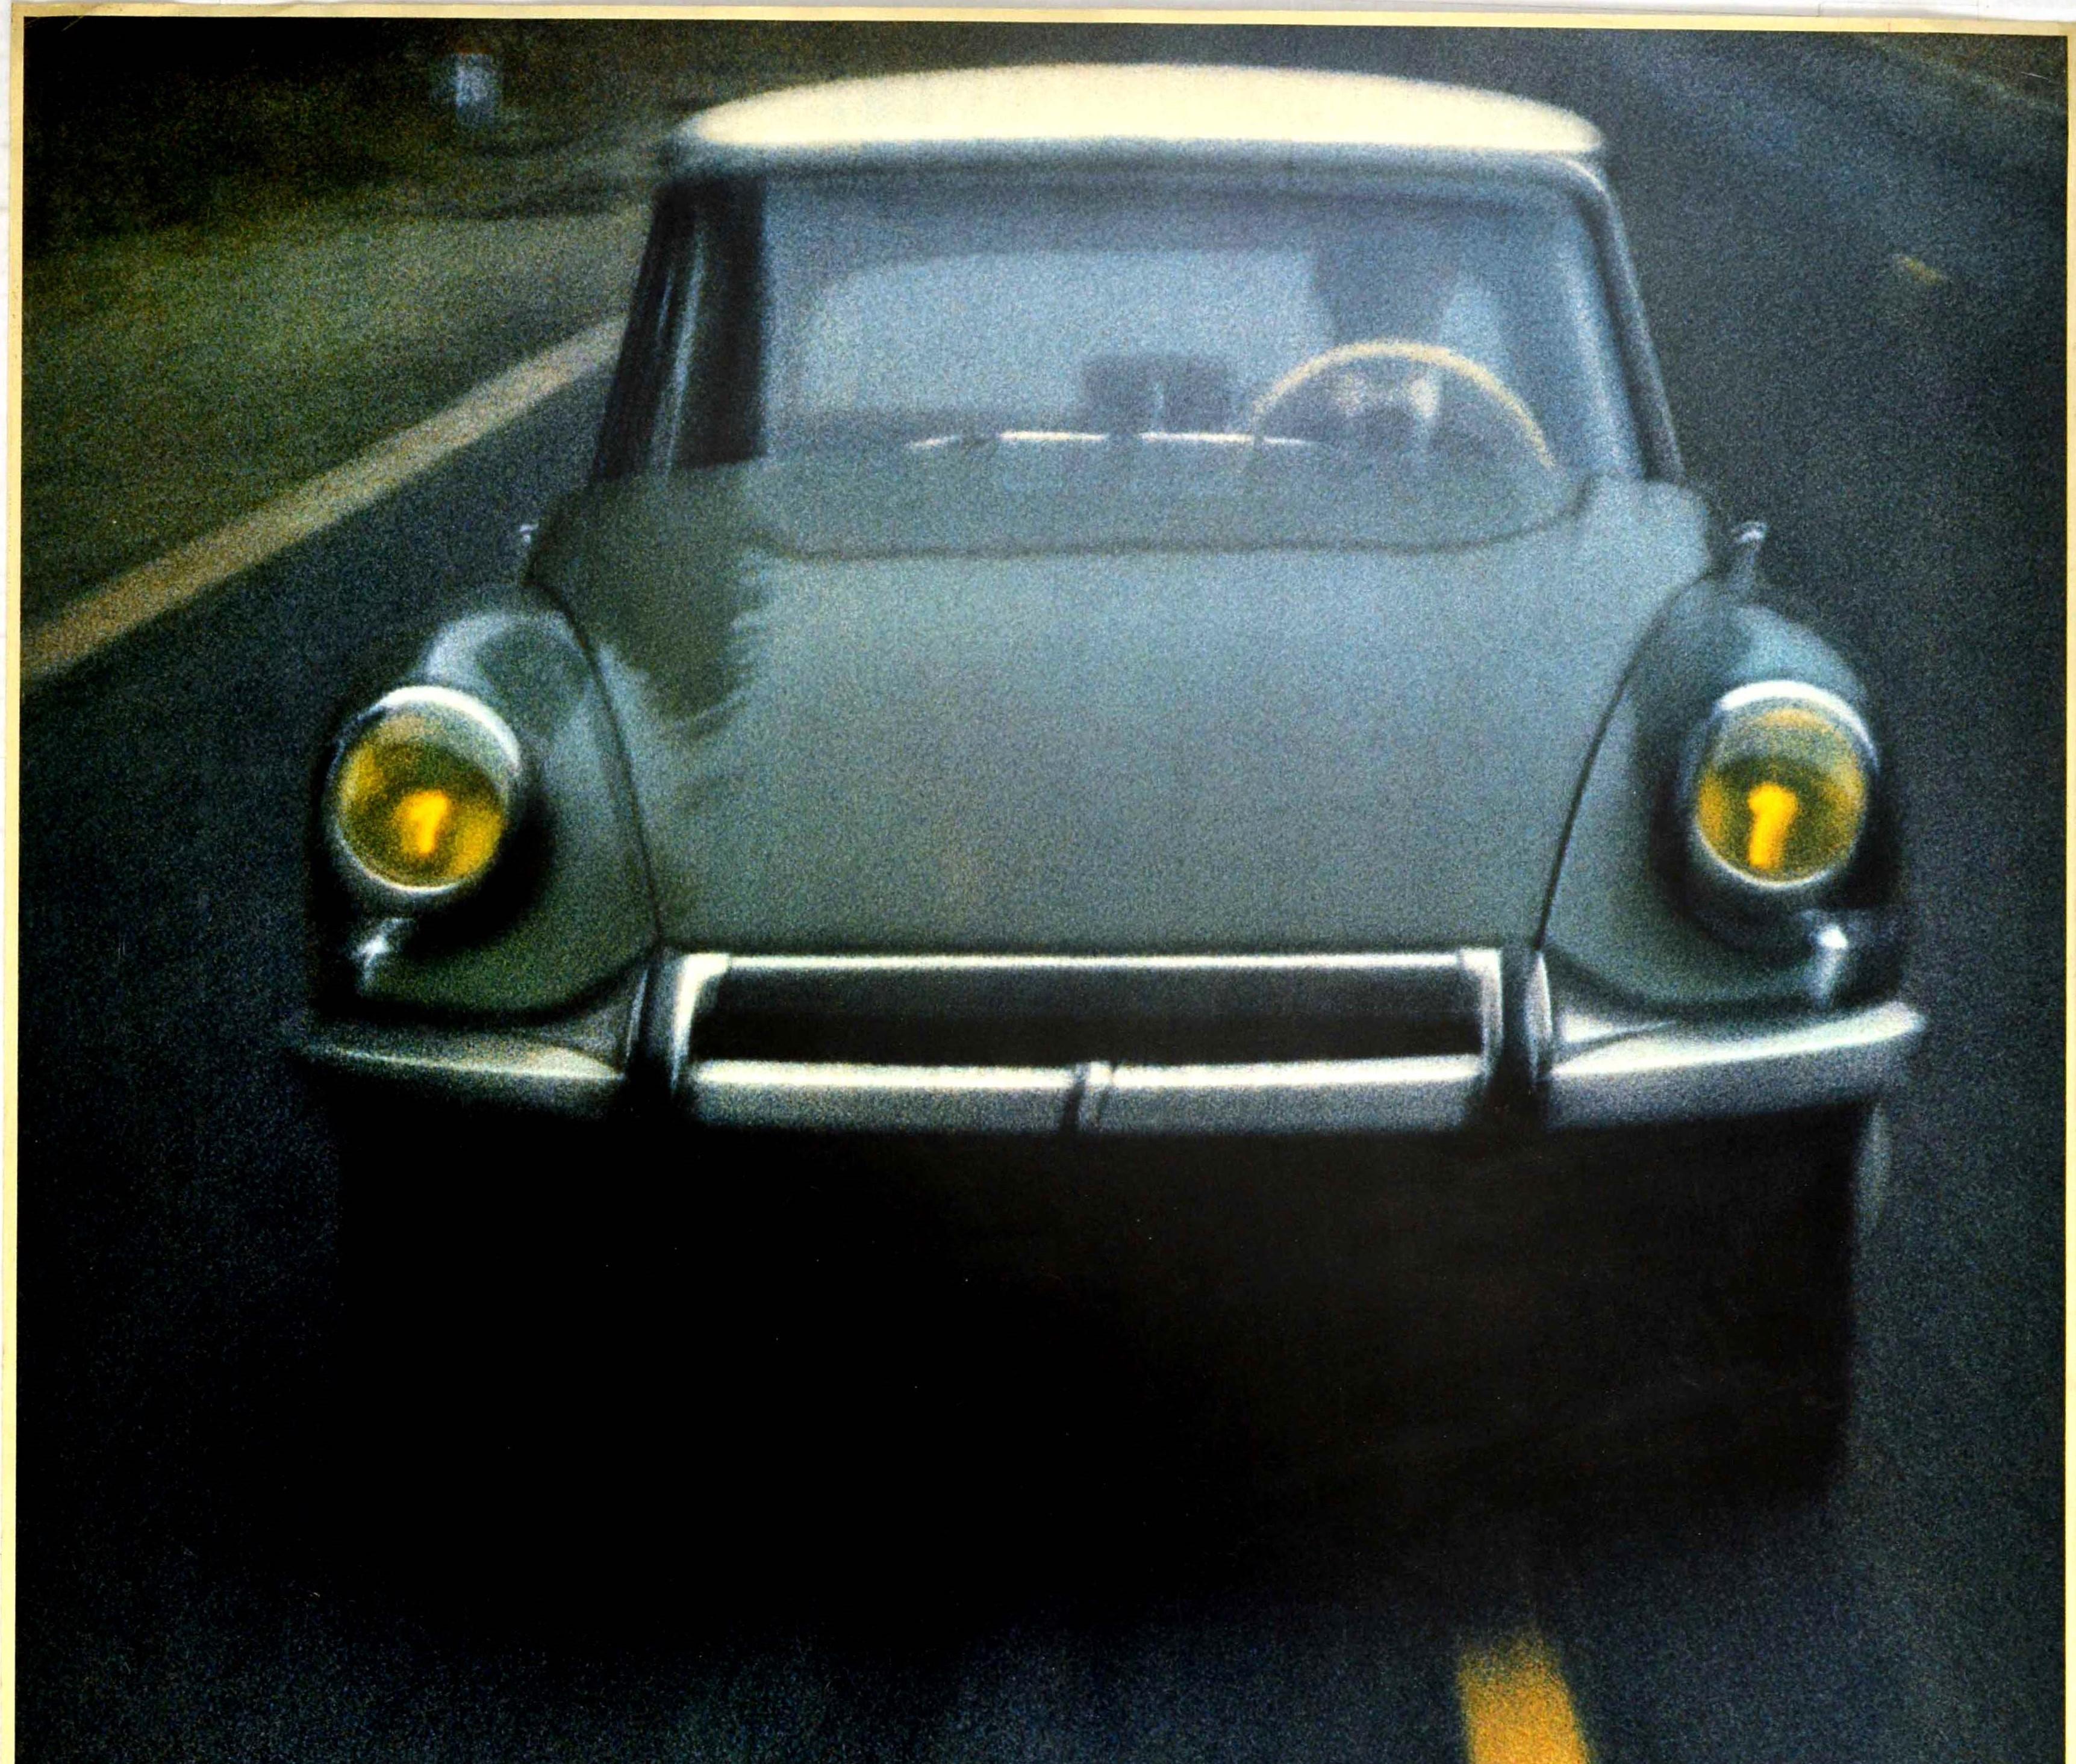 Affiche publicitaire originale émise par le constructeur automobile français Citroën (fondé en 1919) représentant une superbe photographie d'une Citroën DS vert foncé de 1960 roulant à vive allure sur une route. Le conducteur porte un costume et un